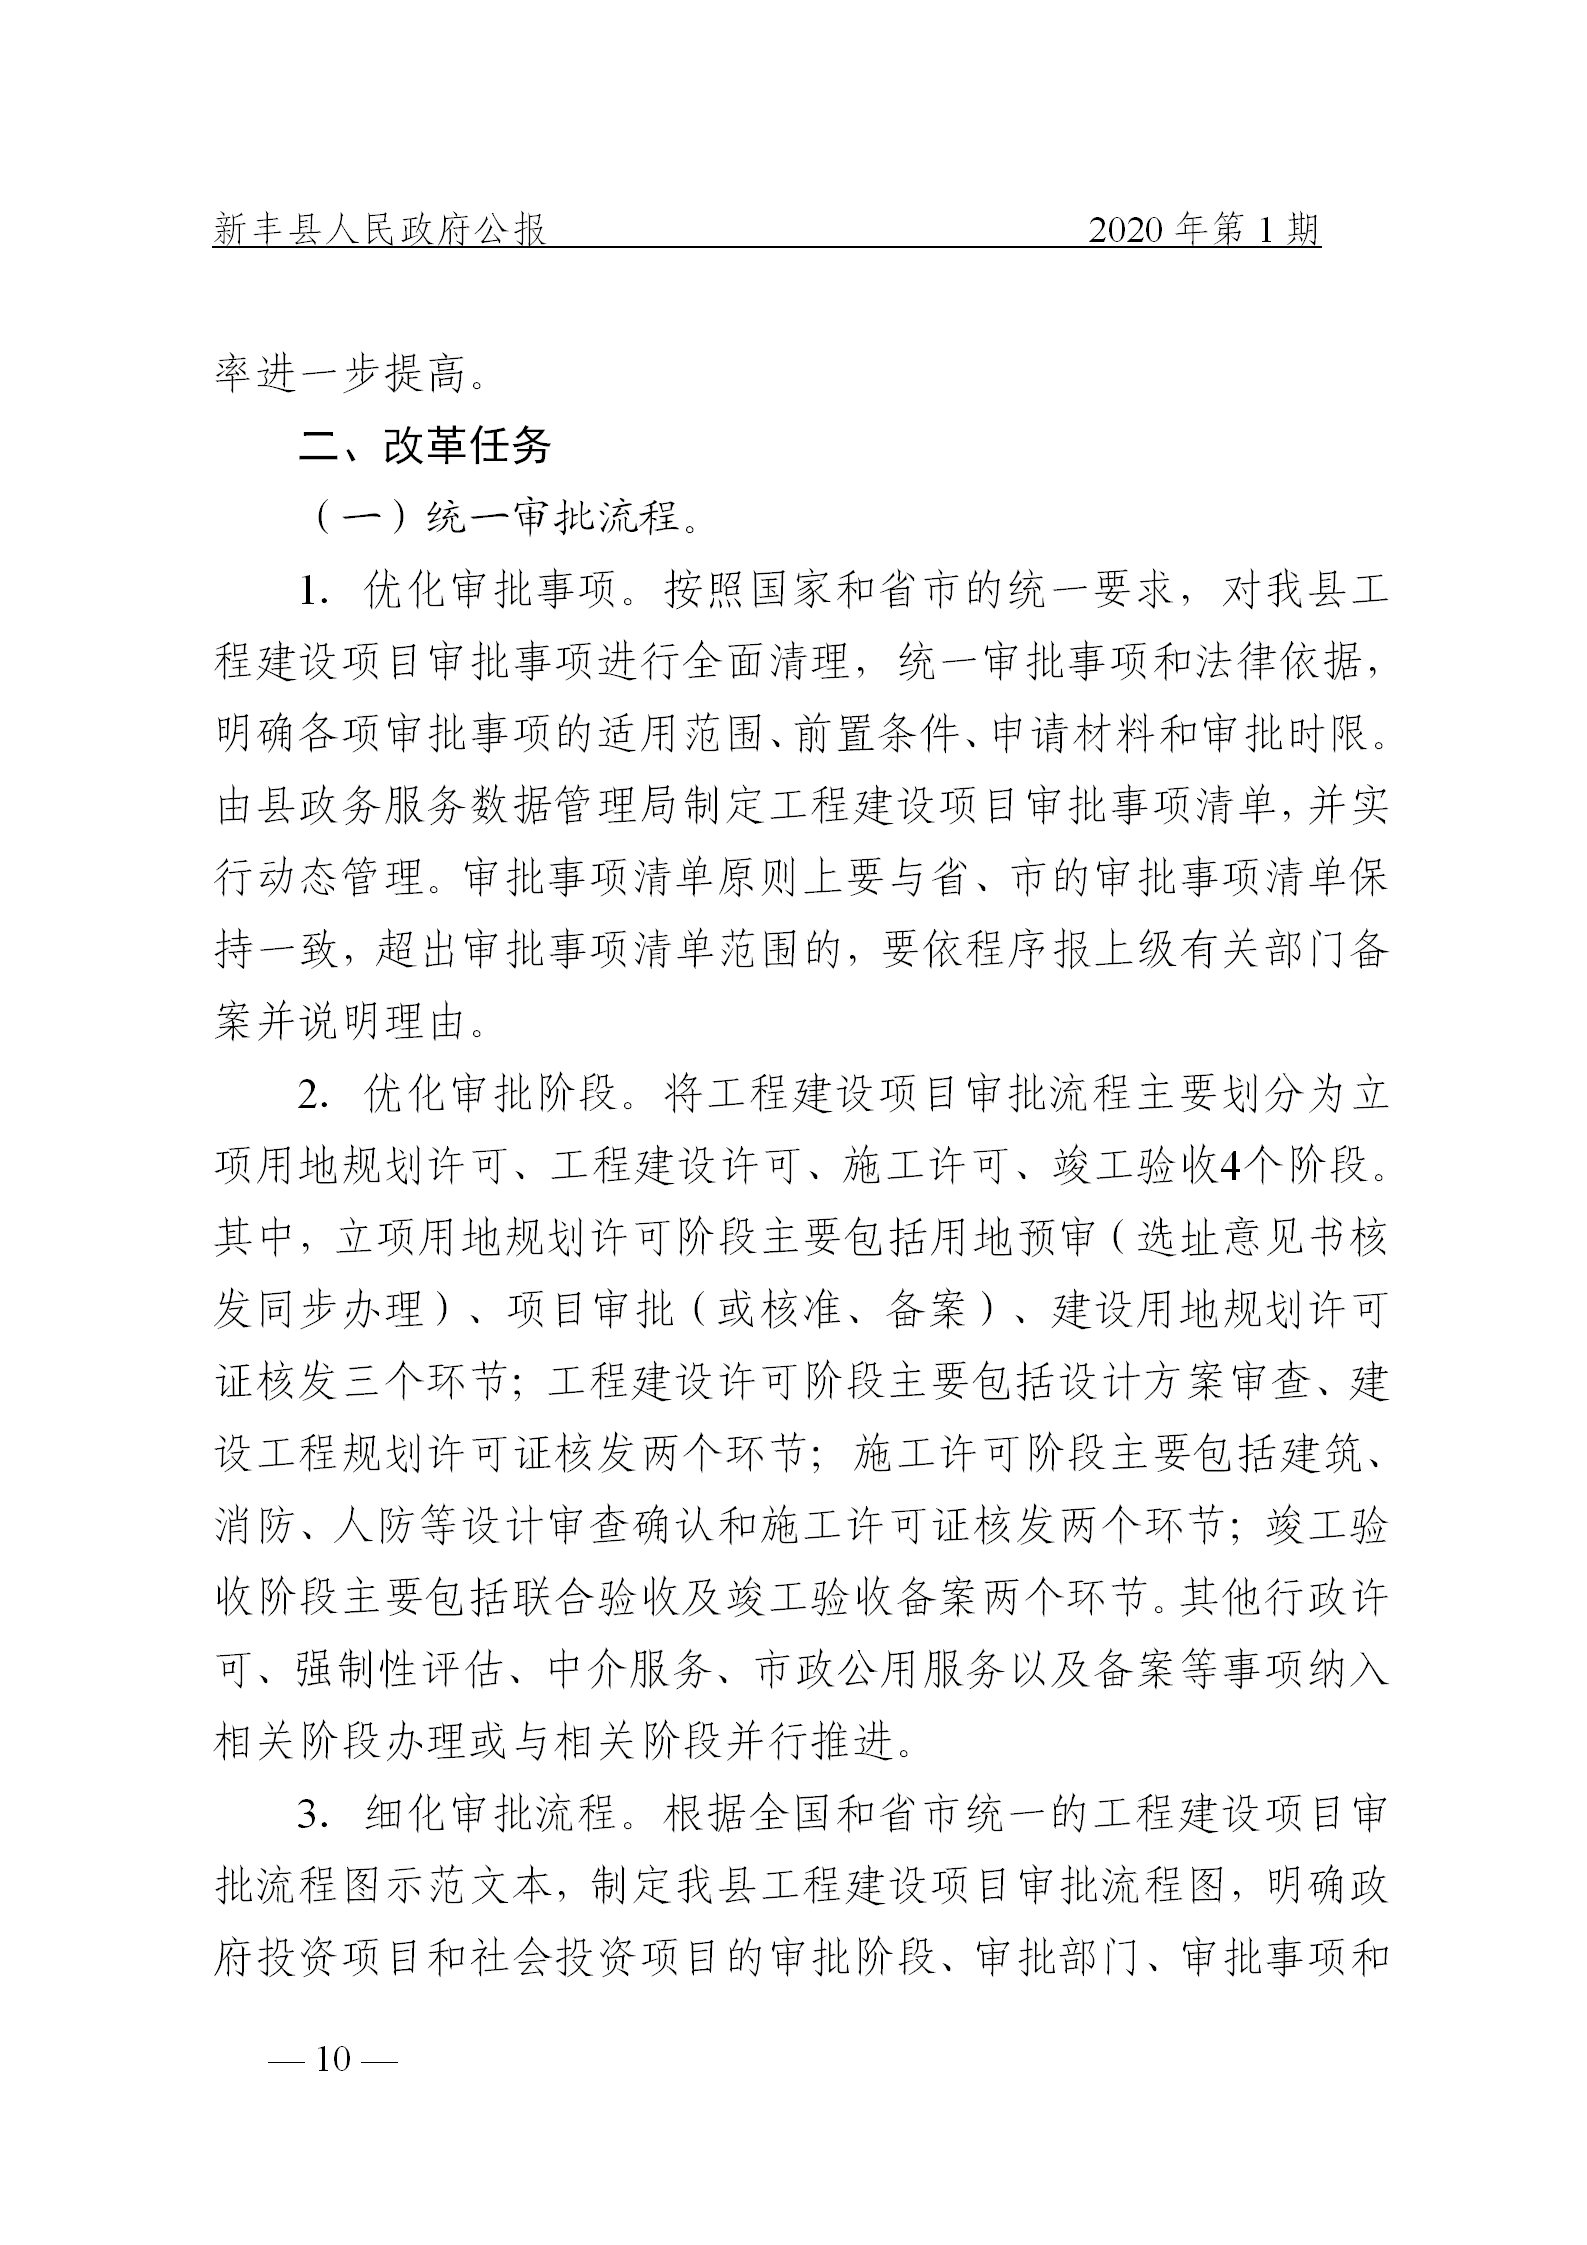 《新丰县人民政府公报》2020年第1期(1)_10.png